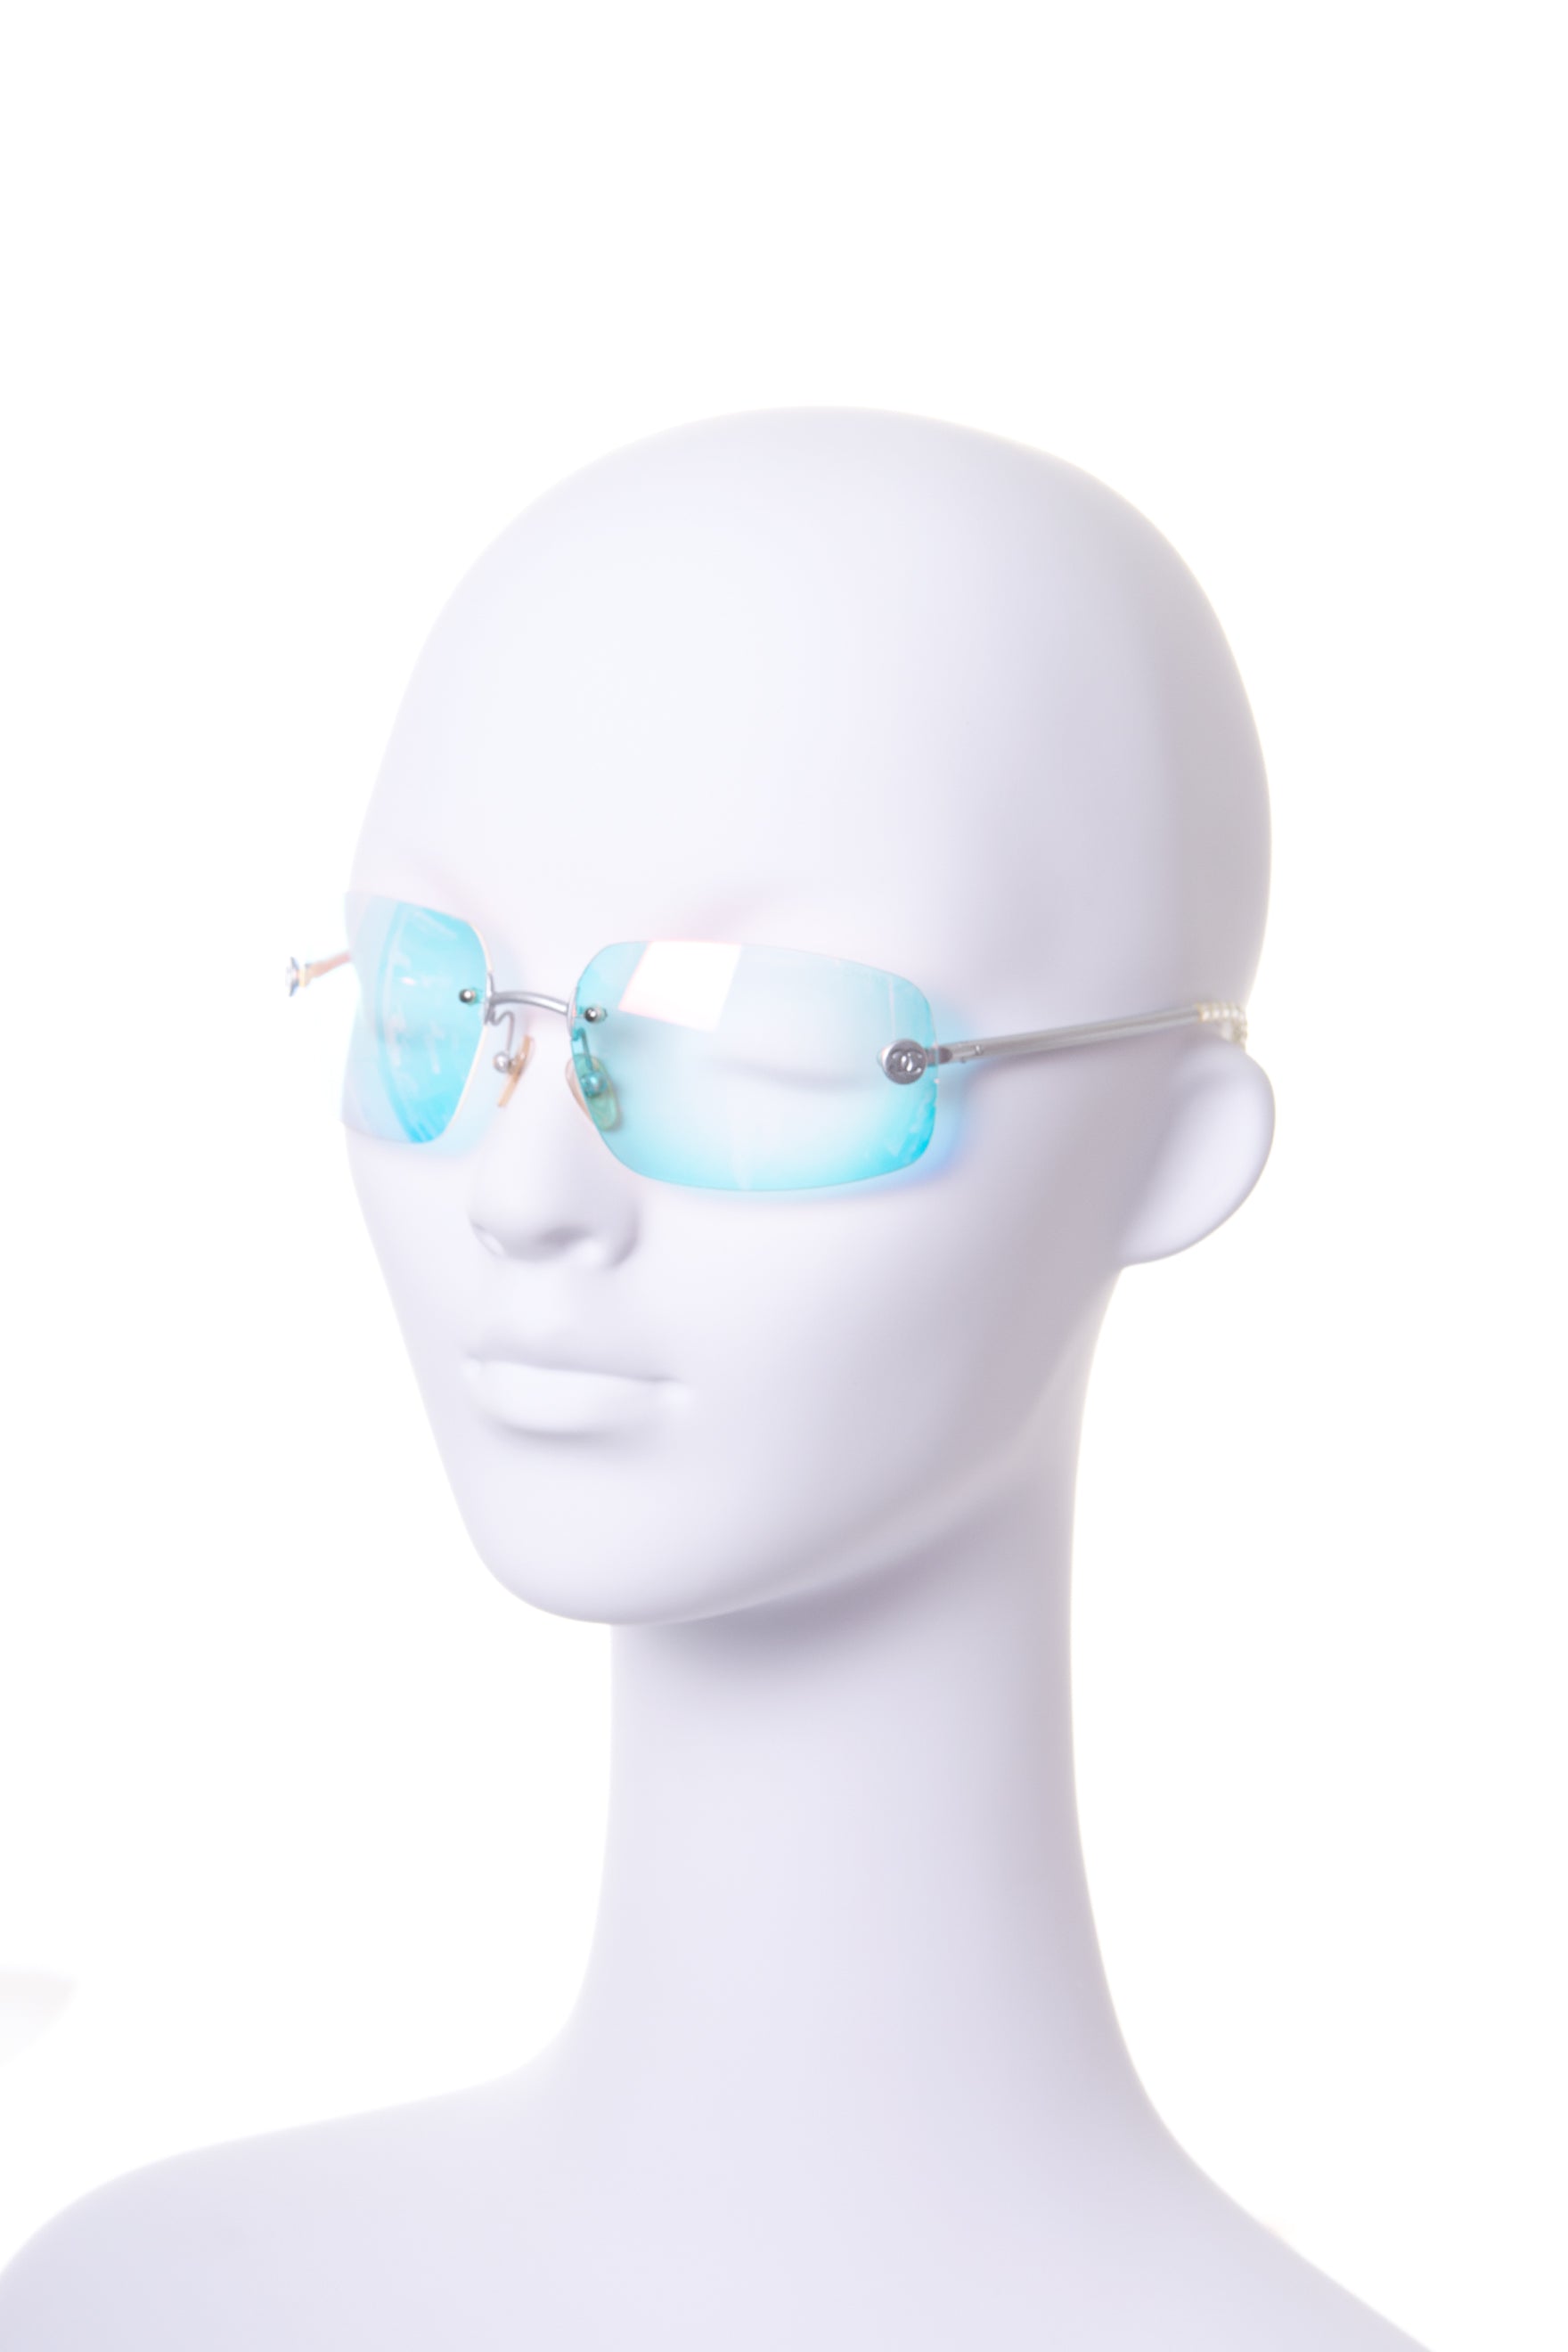 CHANEL Sunglasses Cateye 58/16 140 Blue Ribbon Coco Mark Logo Unused T1372